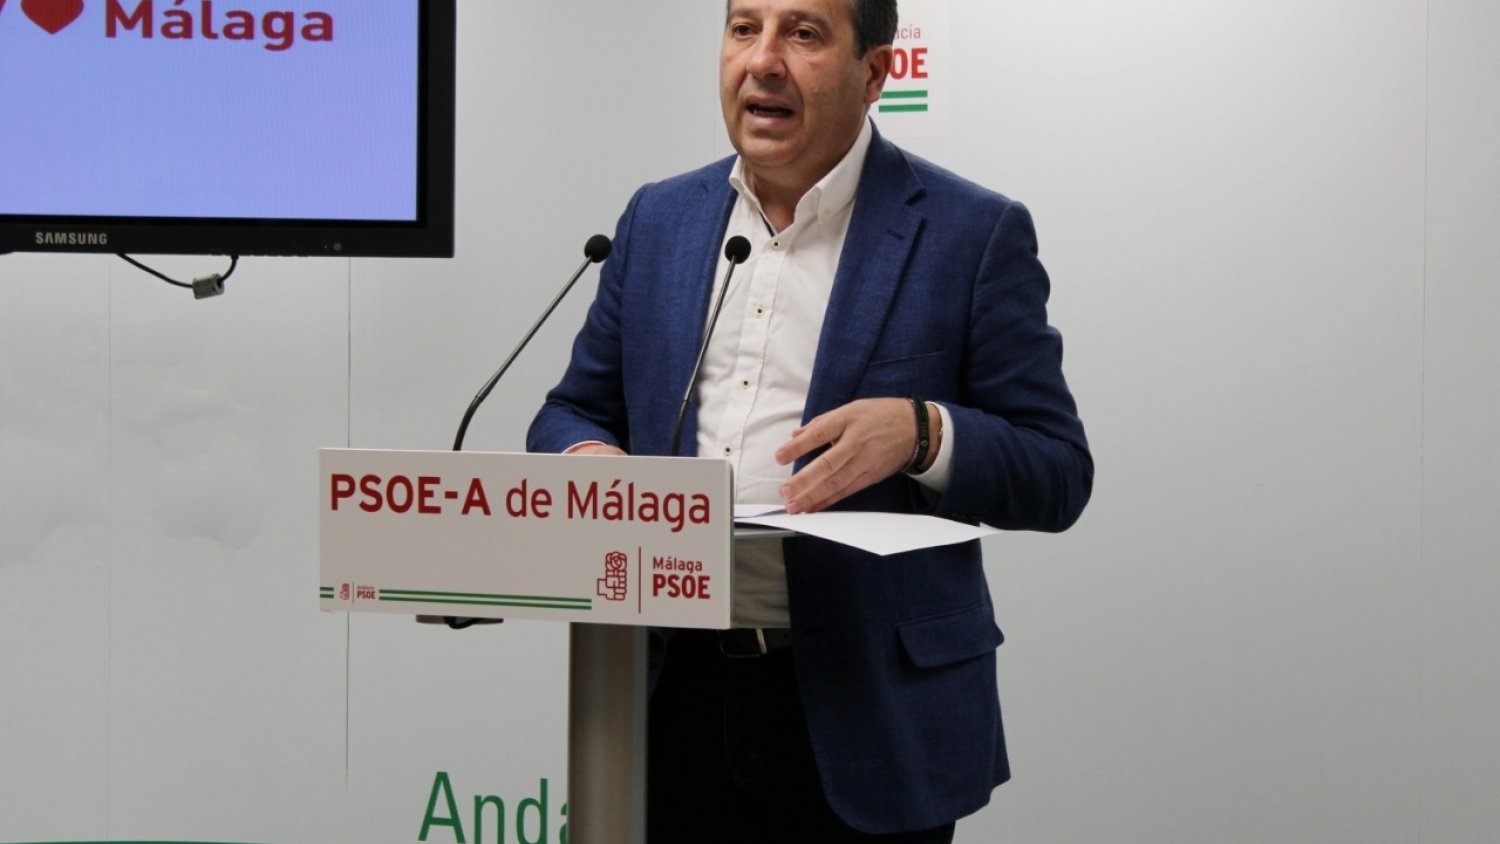 El PSOE pide devolver a la sanidad pública las áreas trasladadas a privados durante la pandemia